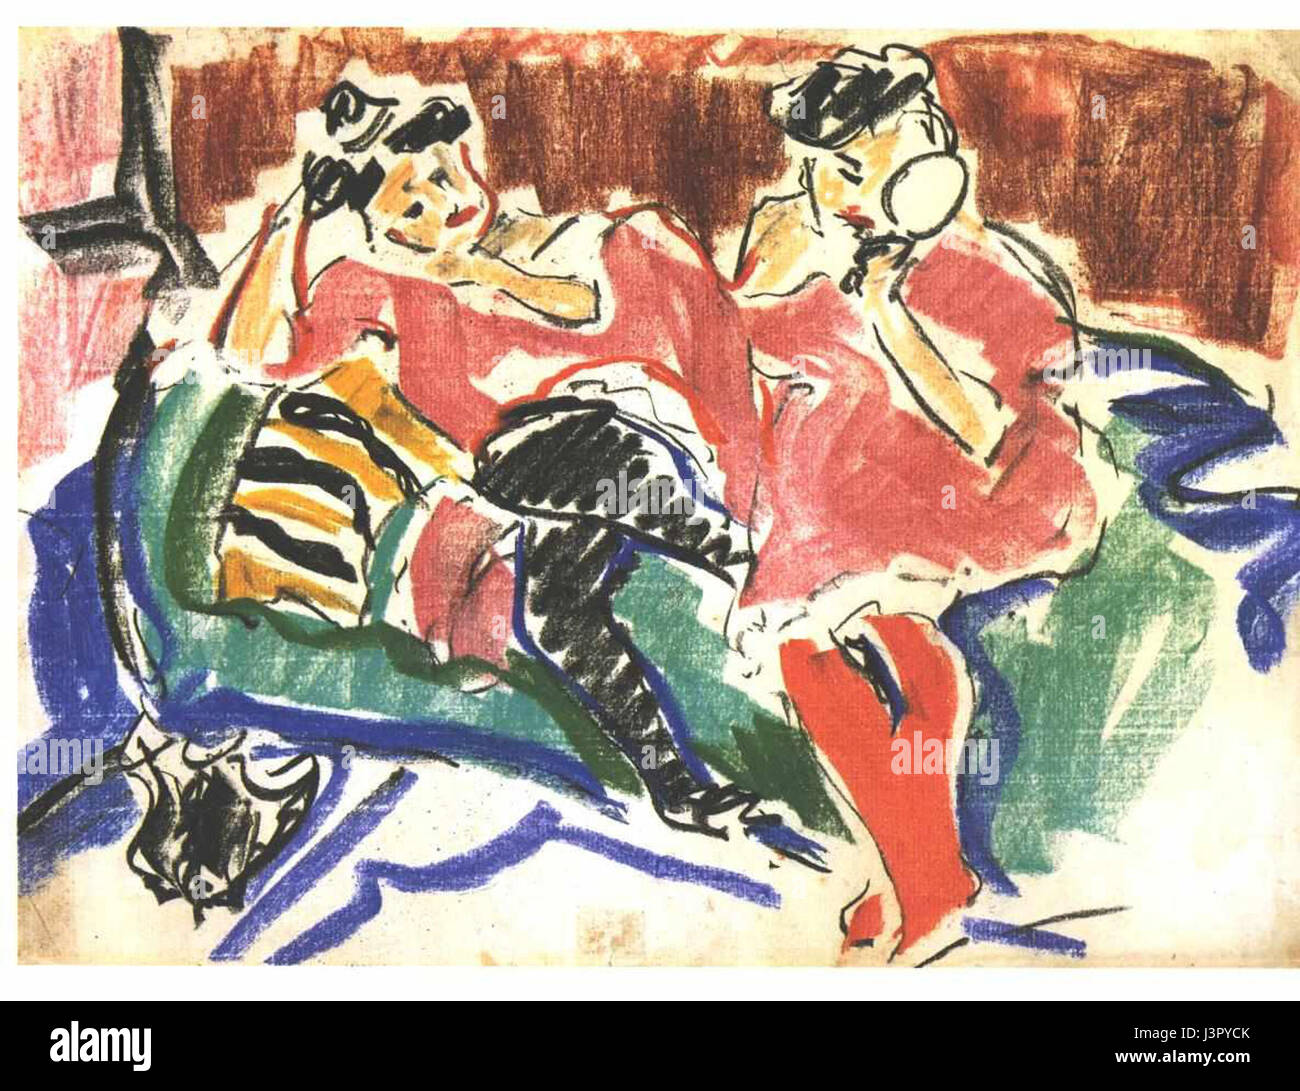 Kirchner   Zwei Frauen auf einem Sofa Stock Photo